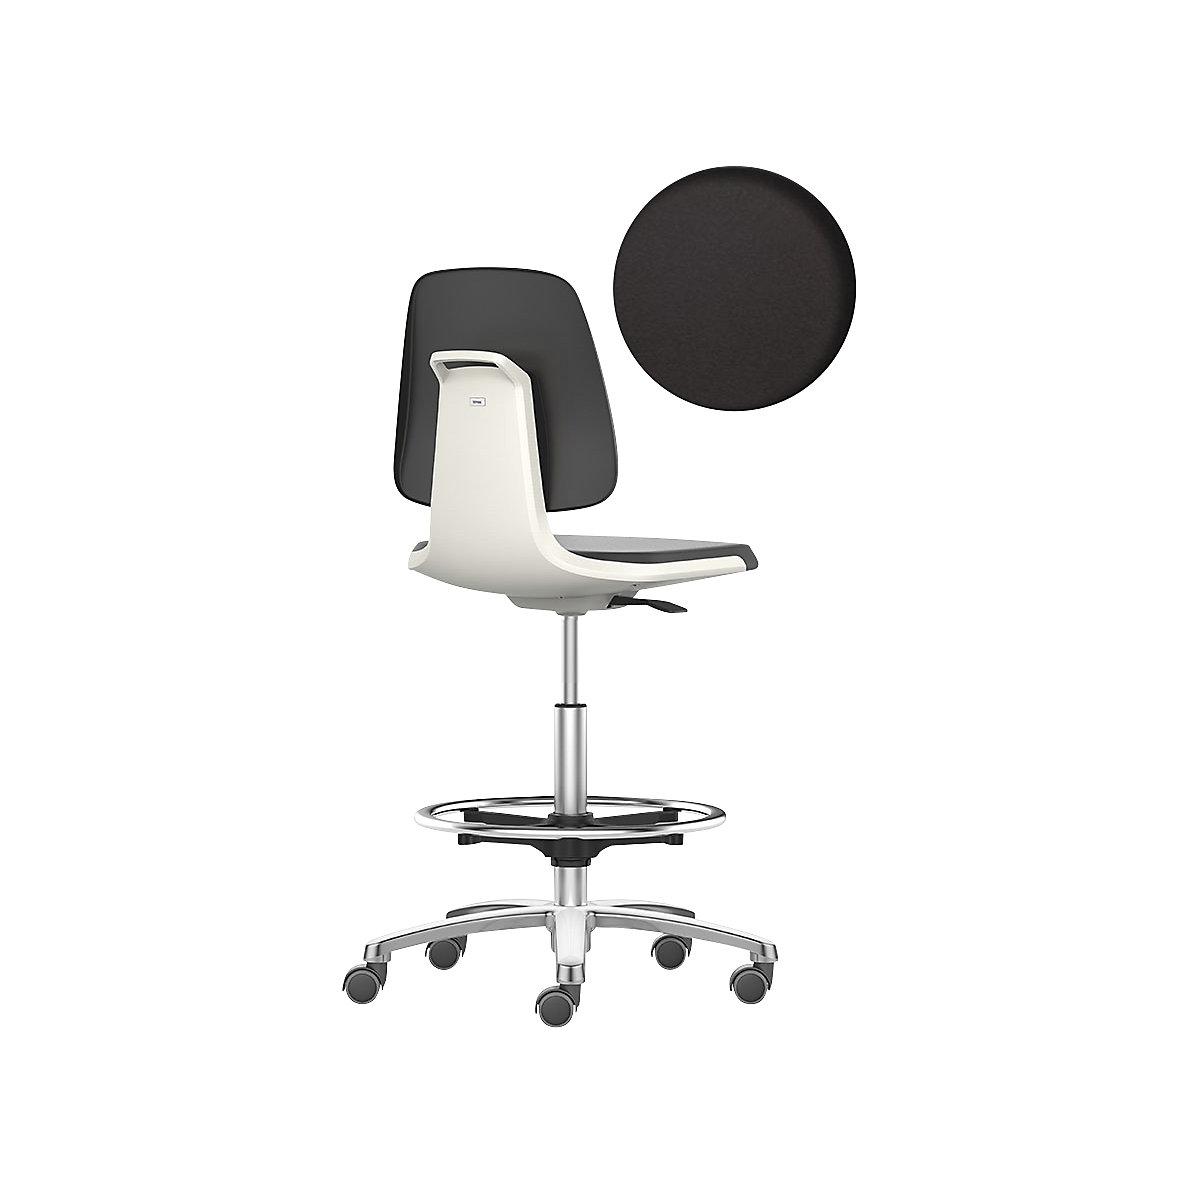 bimos – Siège d'atelier LABSIT, siège haut avec roulettes blocables et repose-pieds circulaire, assise en mousse PU, blanc